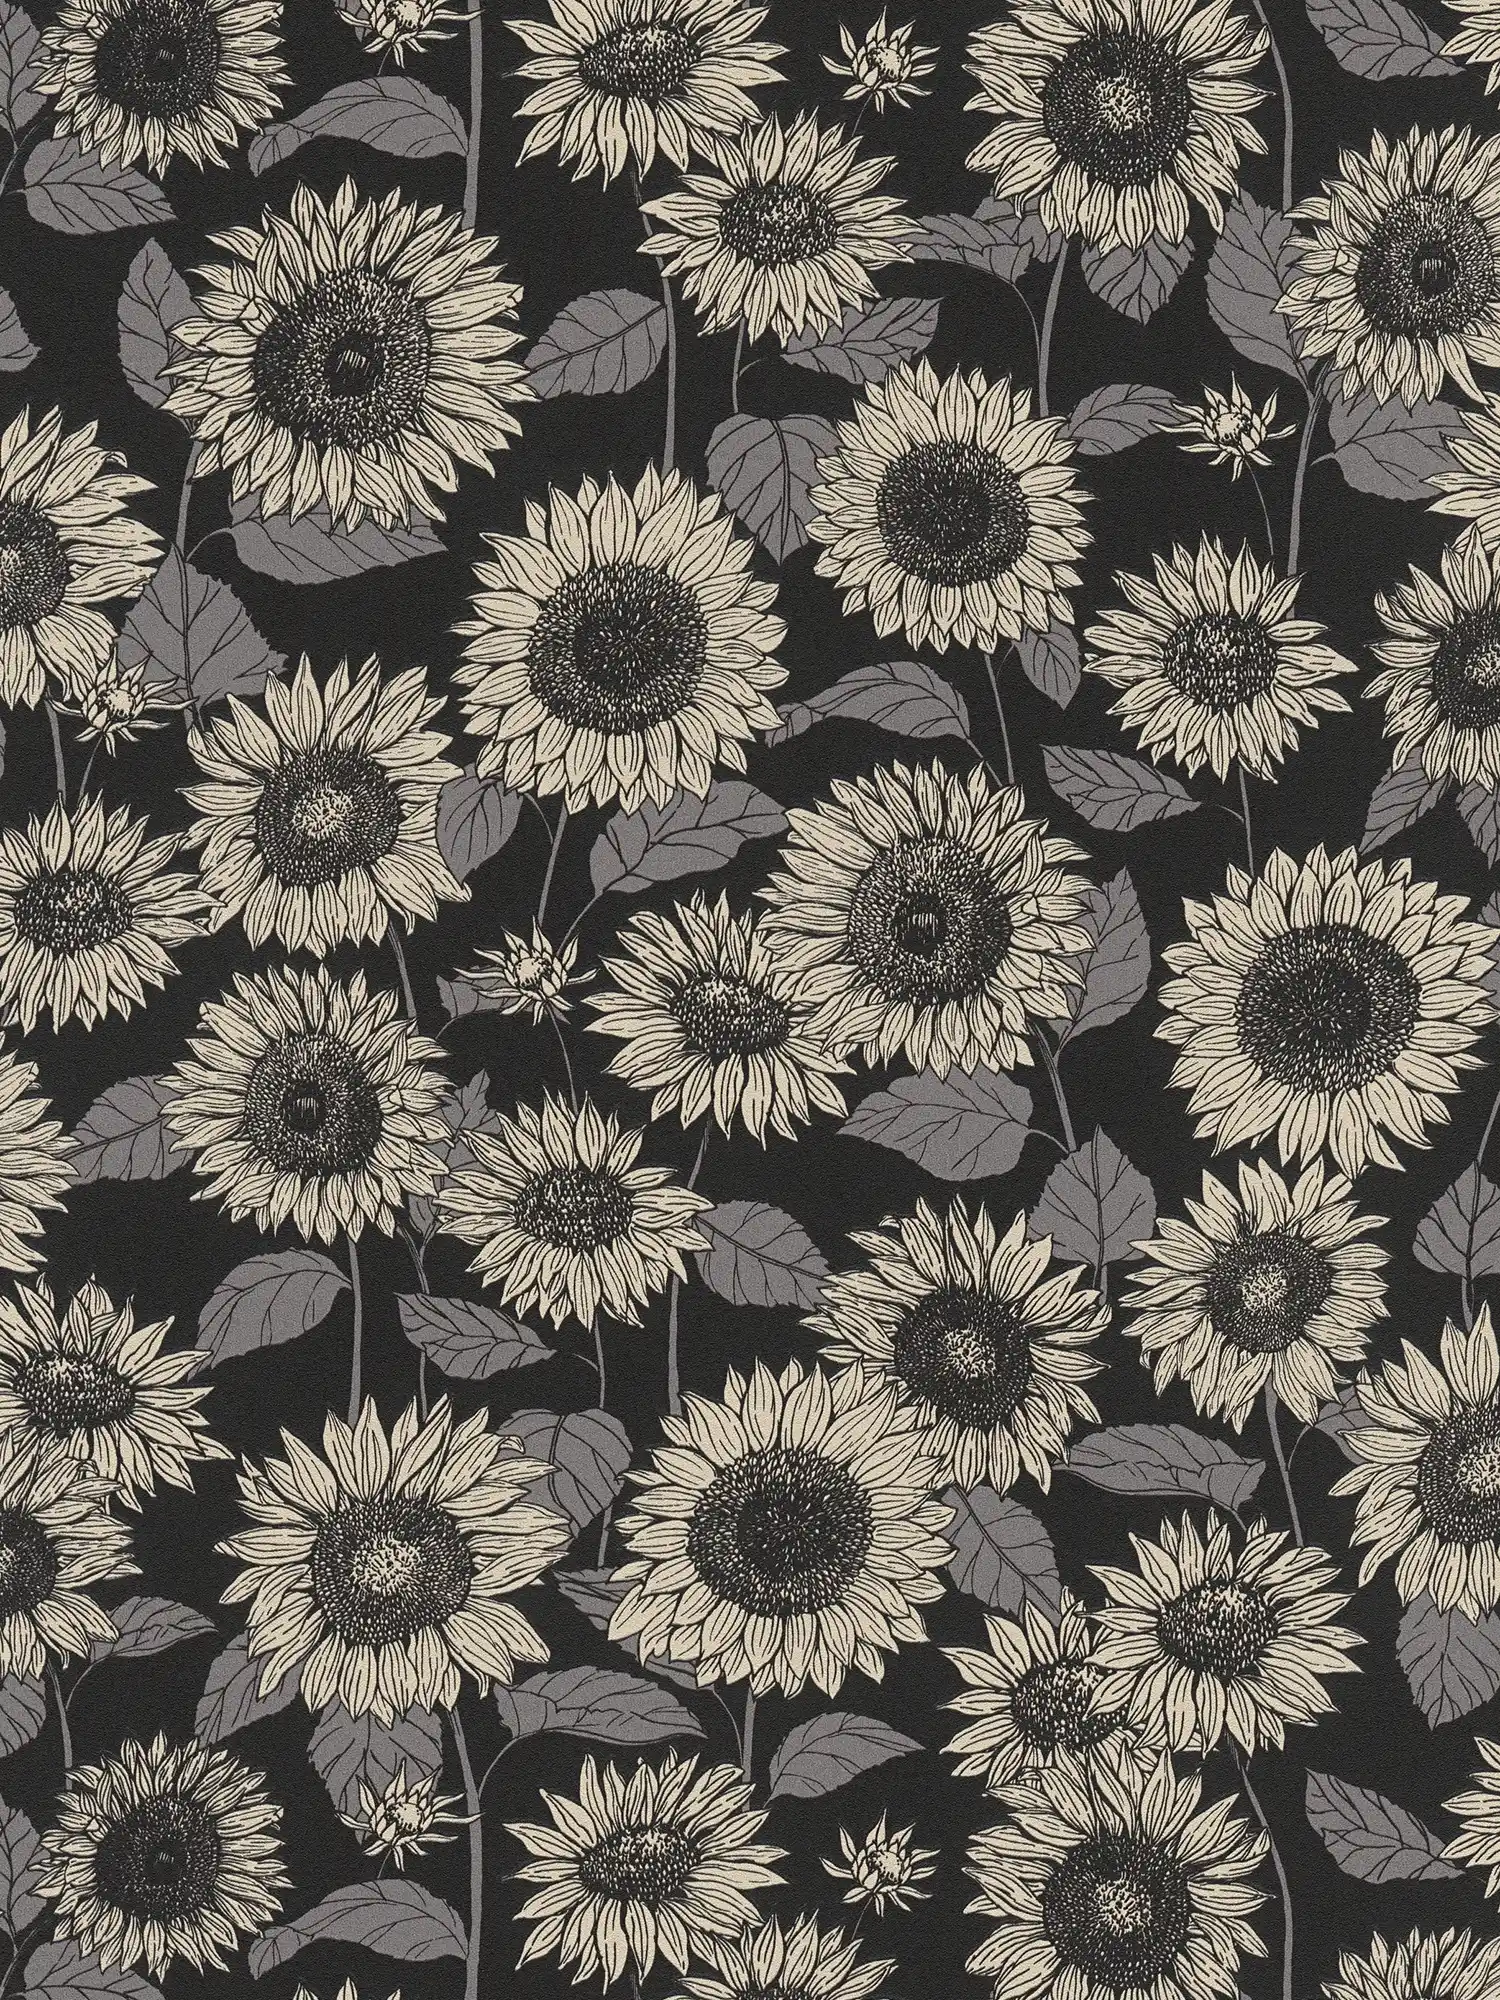 Zonnebloem behang met metallic effect bloemen - zwart, antraciet, grijs
